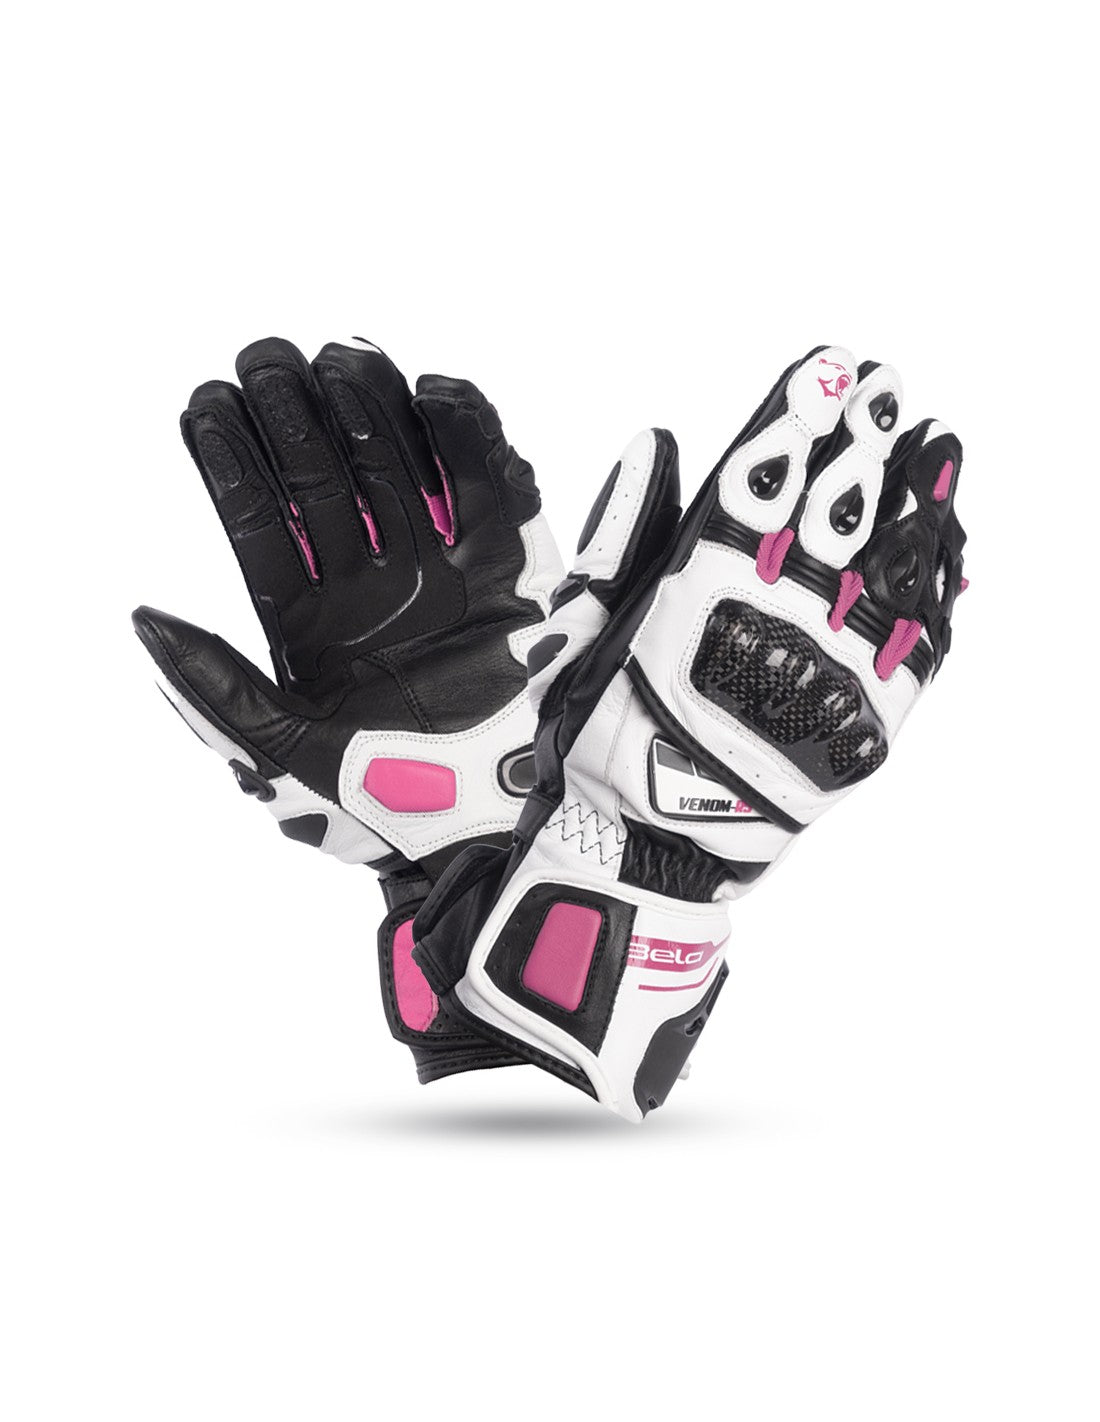 BELA Venom RS Racing Lady - Gloves - White Black Pink MaximomotoUK